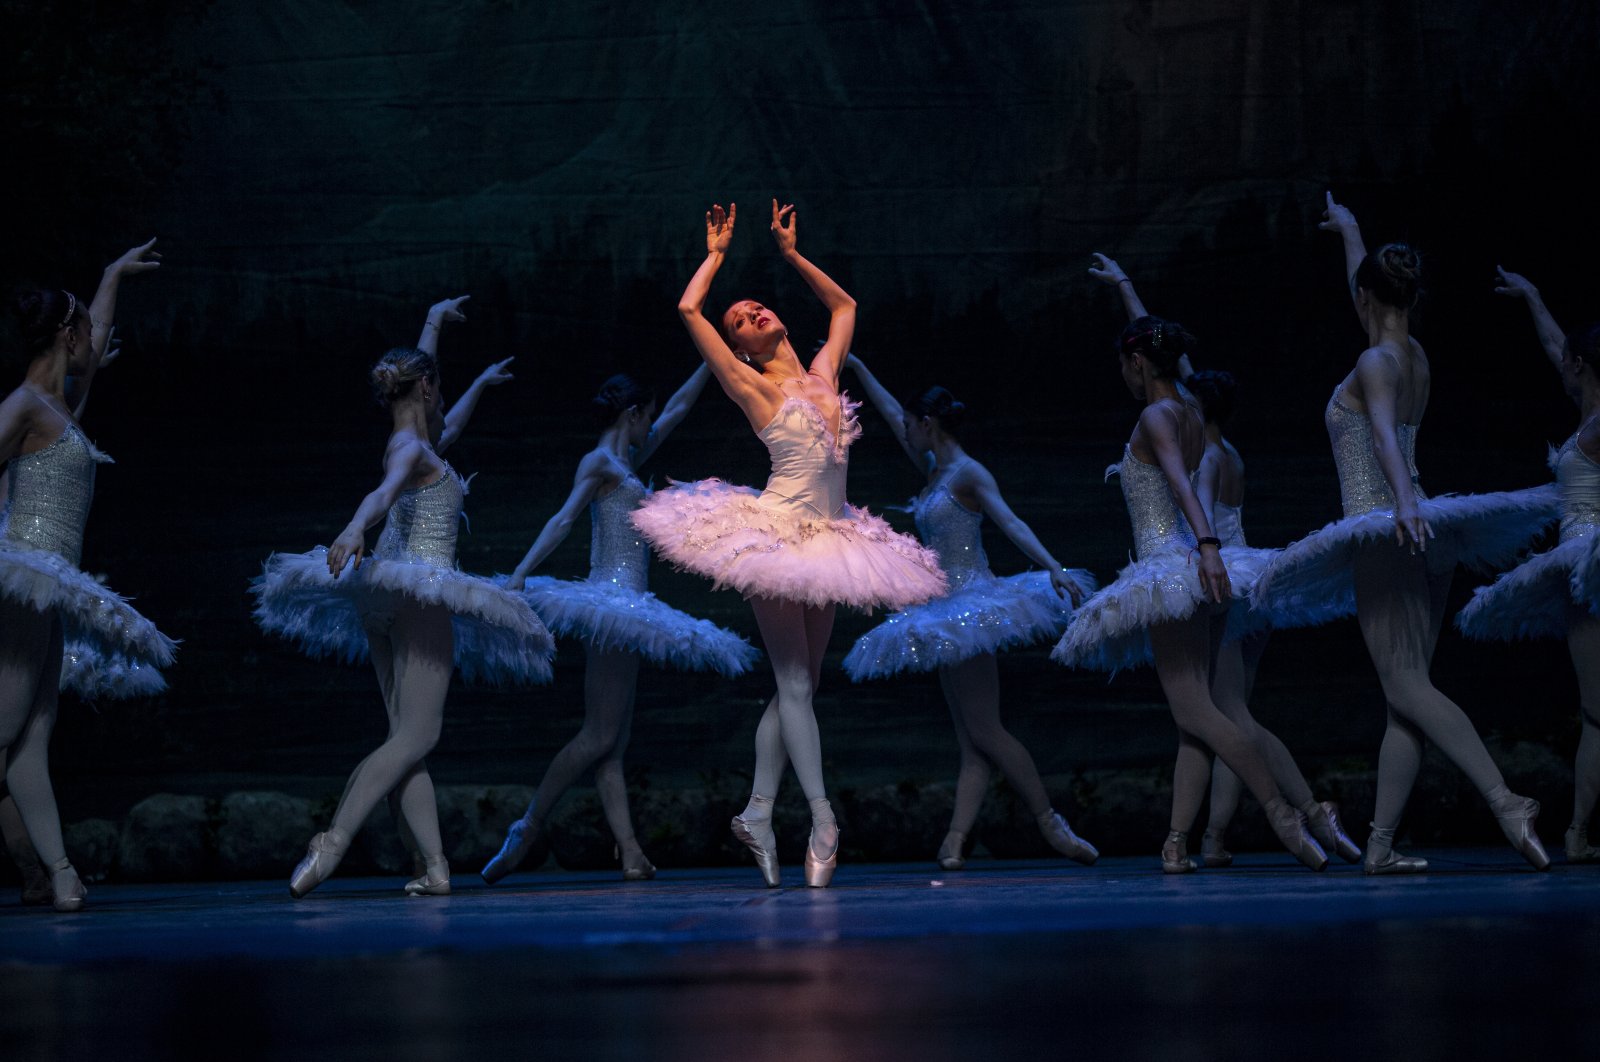 Penari mengapung melintasi panggung Ankara dalam balet ‘Swan Lake’